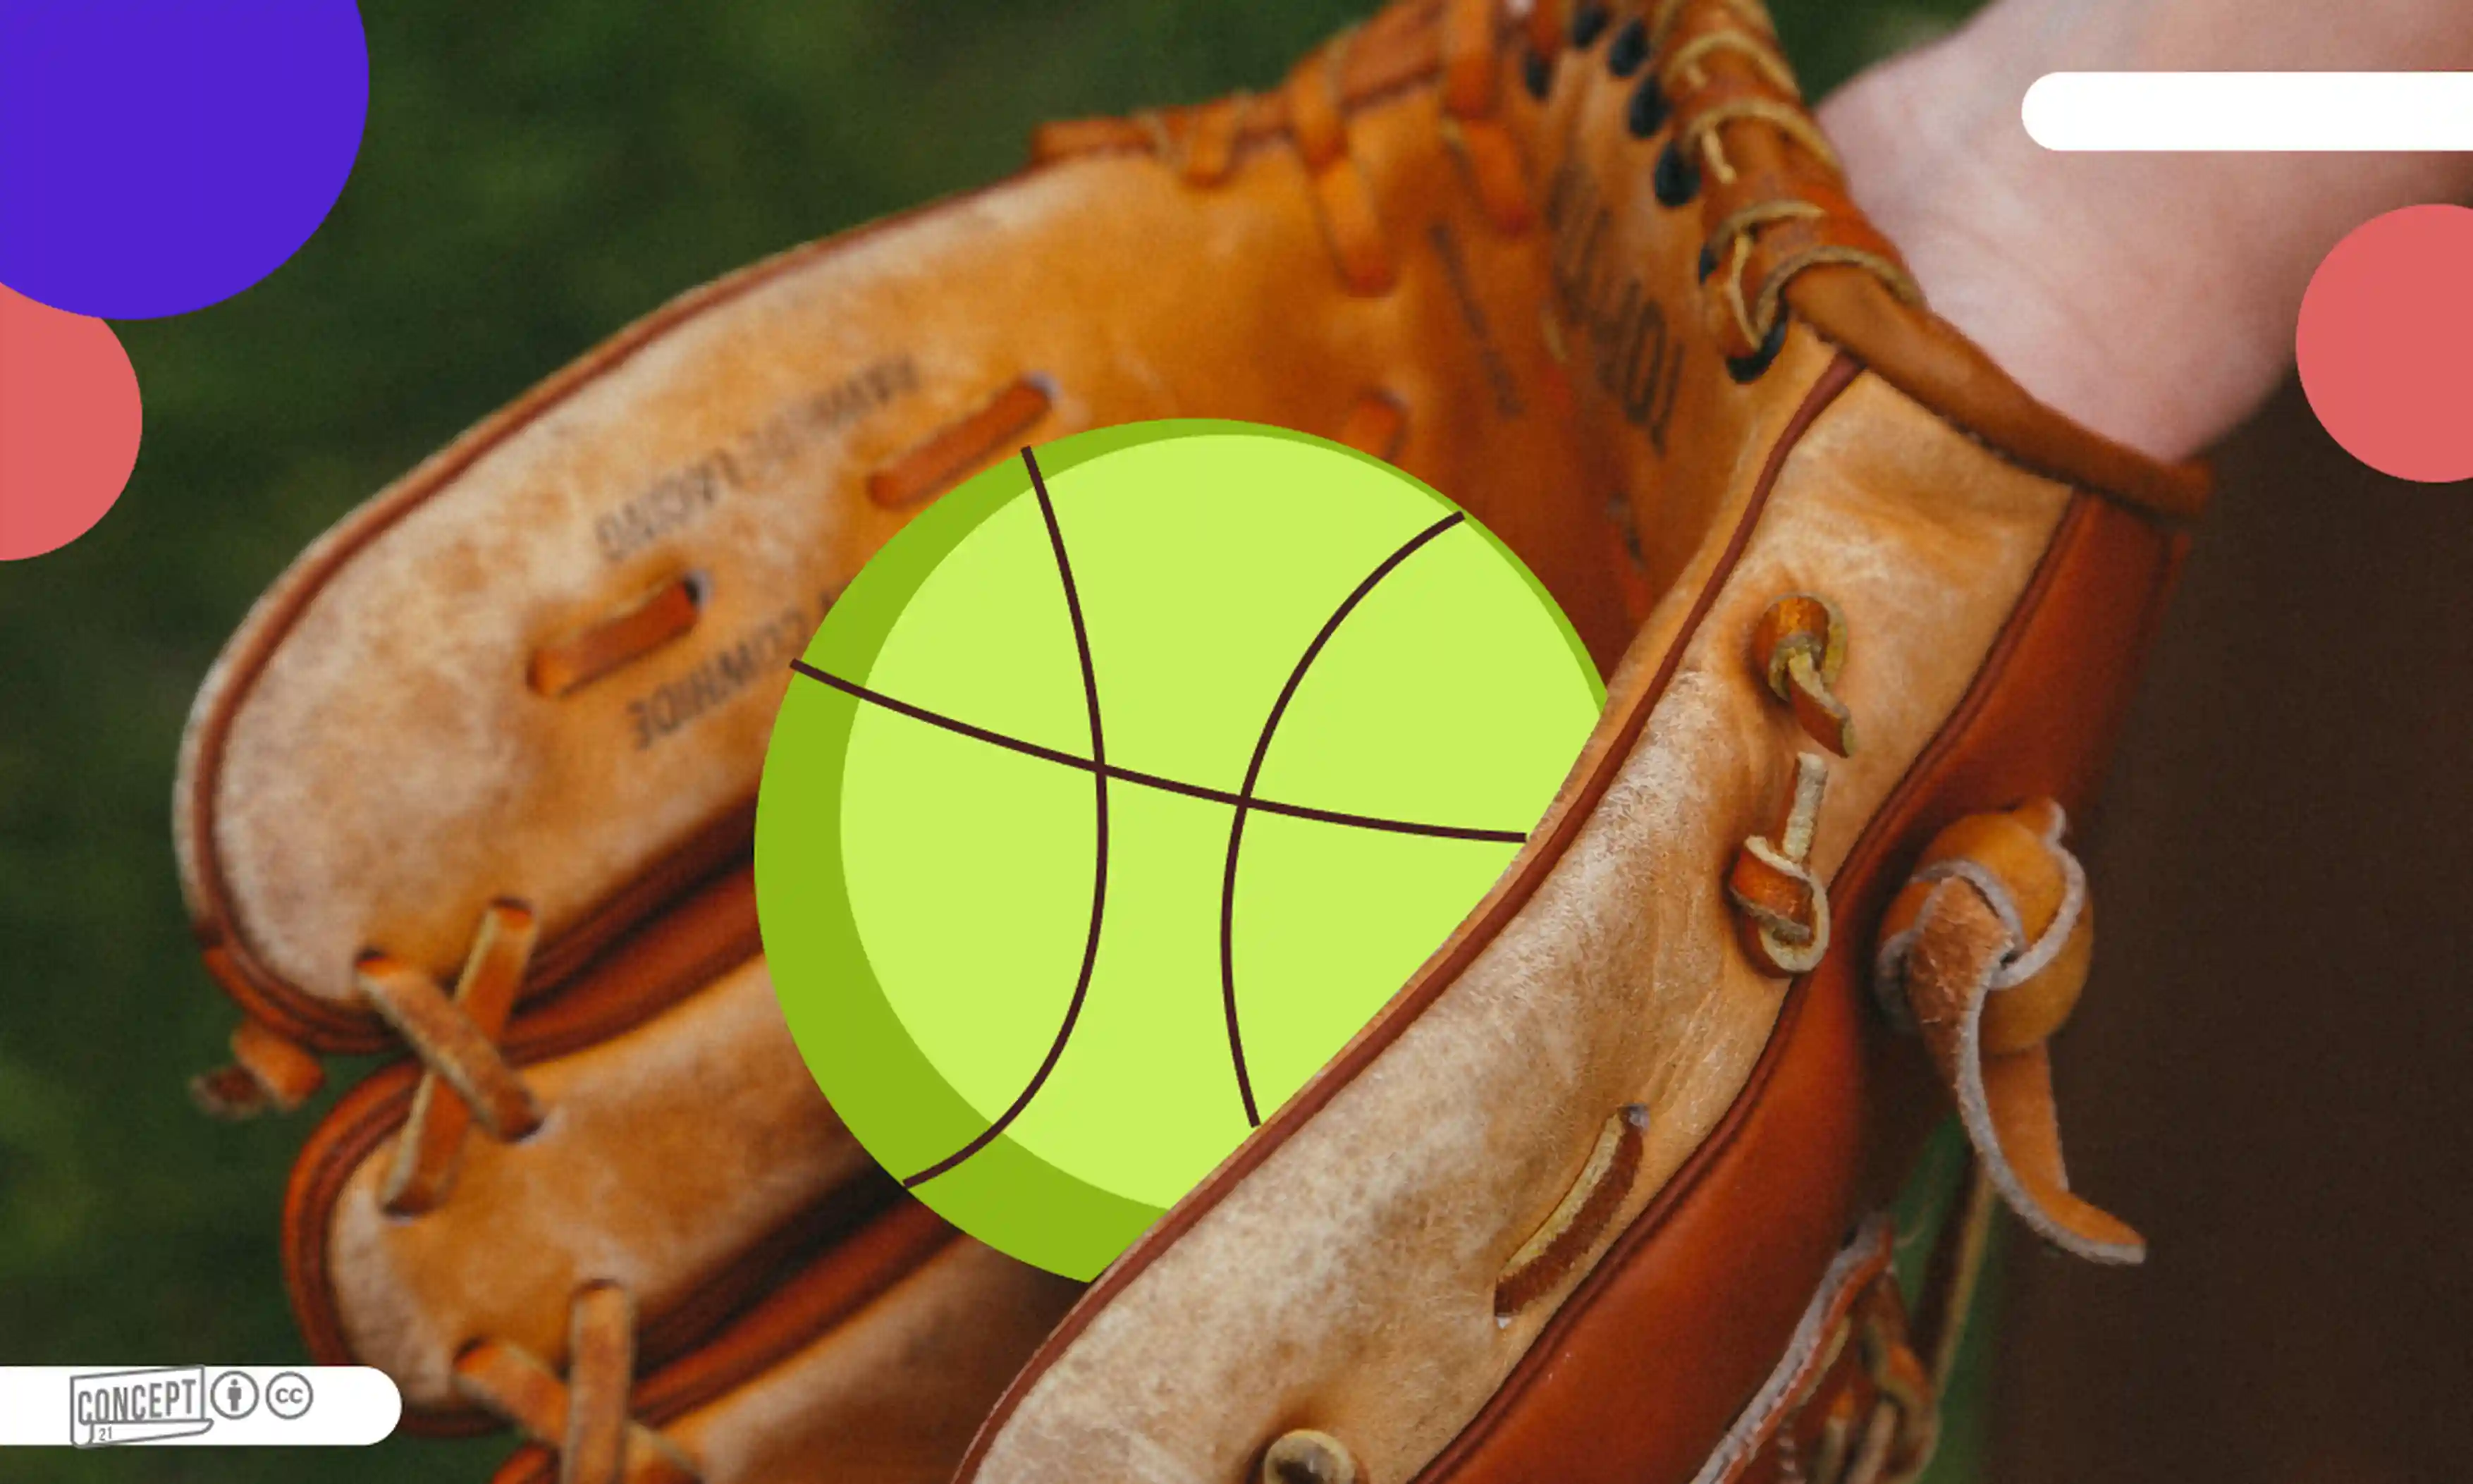 A green ball in a baseball glove